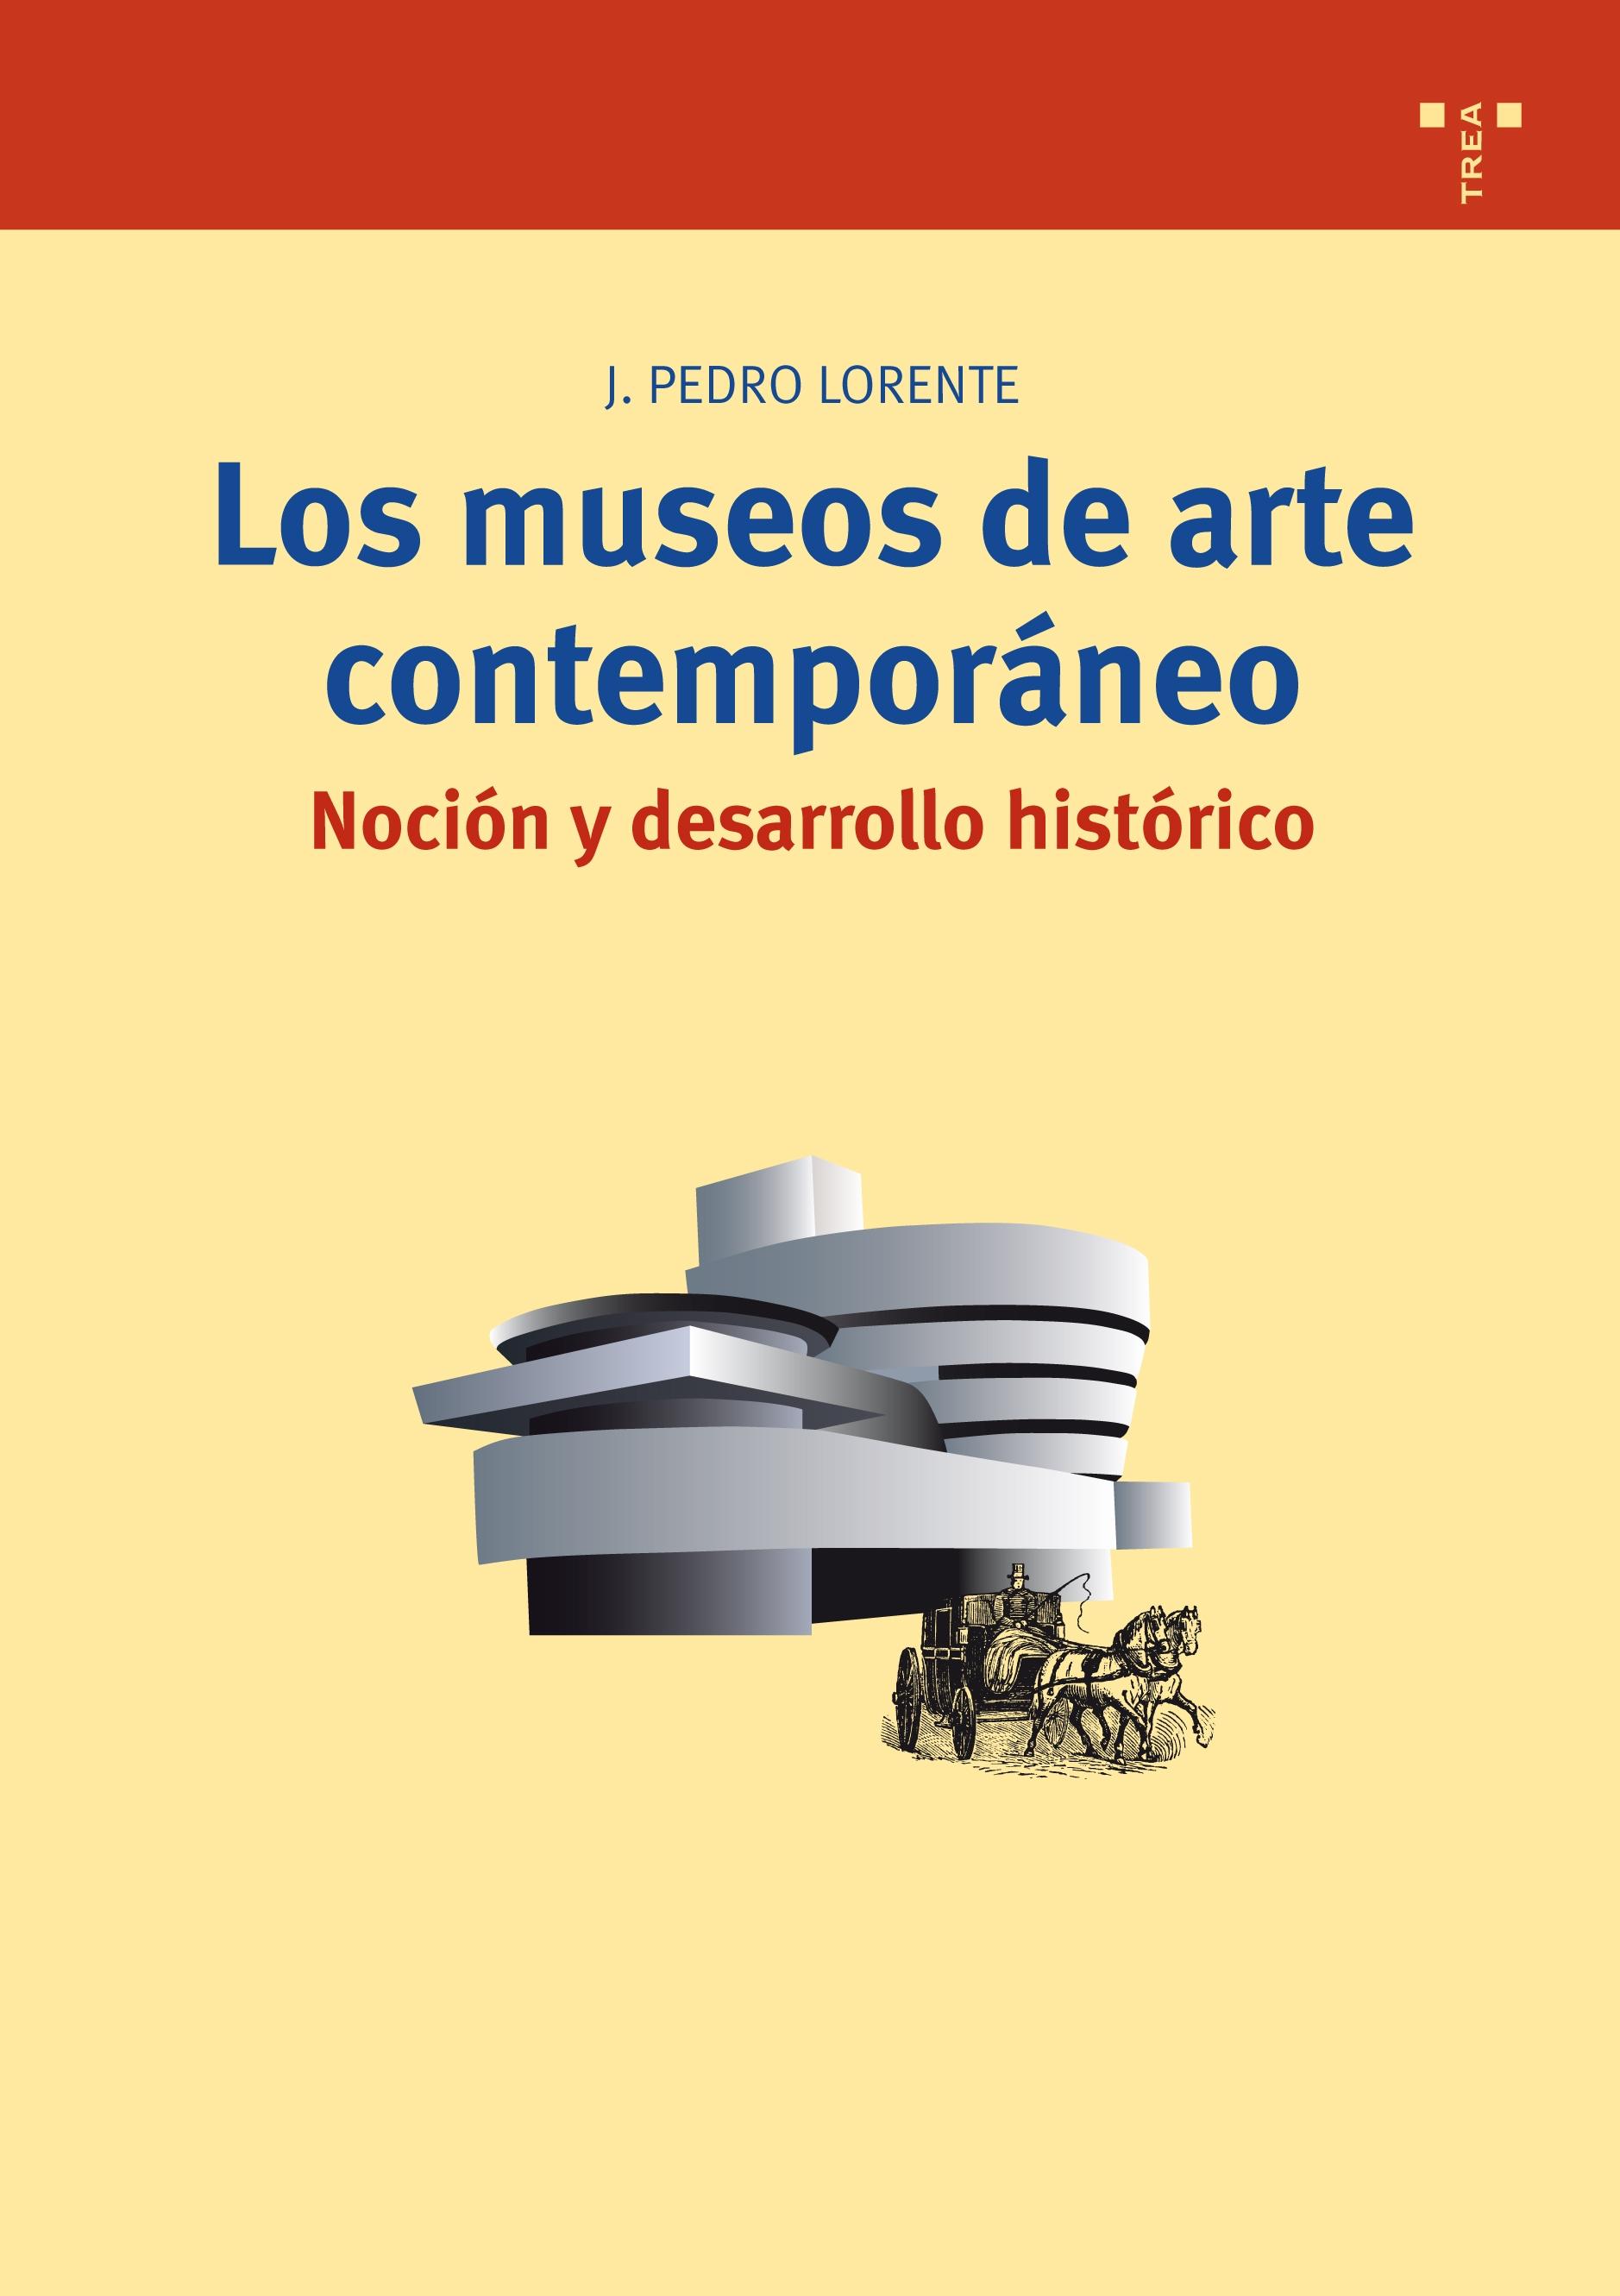 Los museos de arte contemporáneo. Noción y desarrollo histórico "noción y desarrollo histórico"